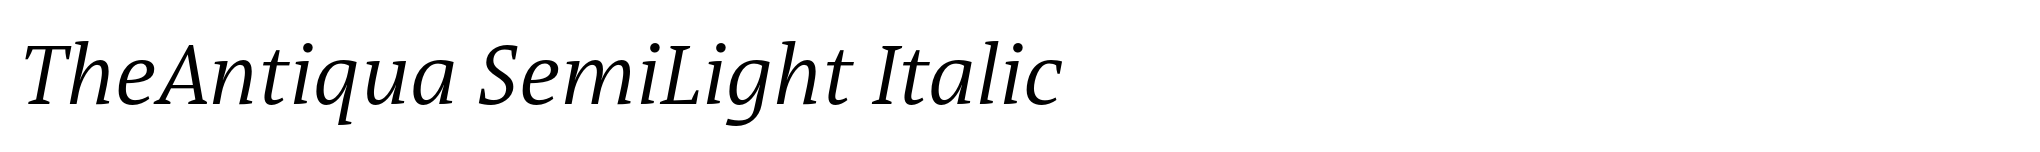 TheAntiqua SemiLight Italic image